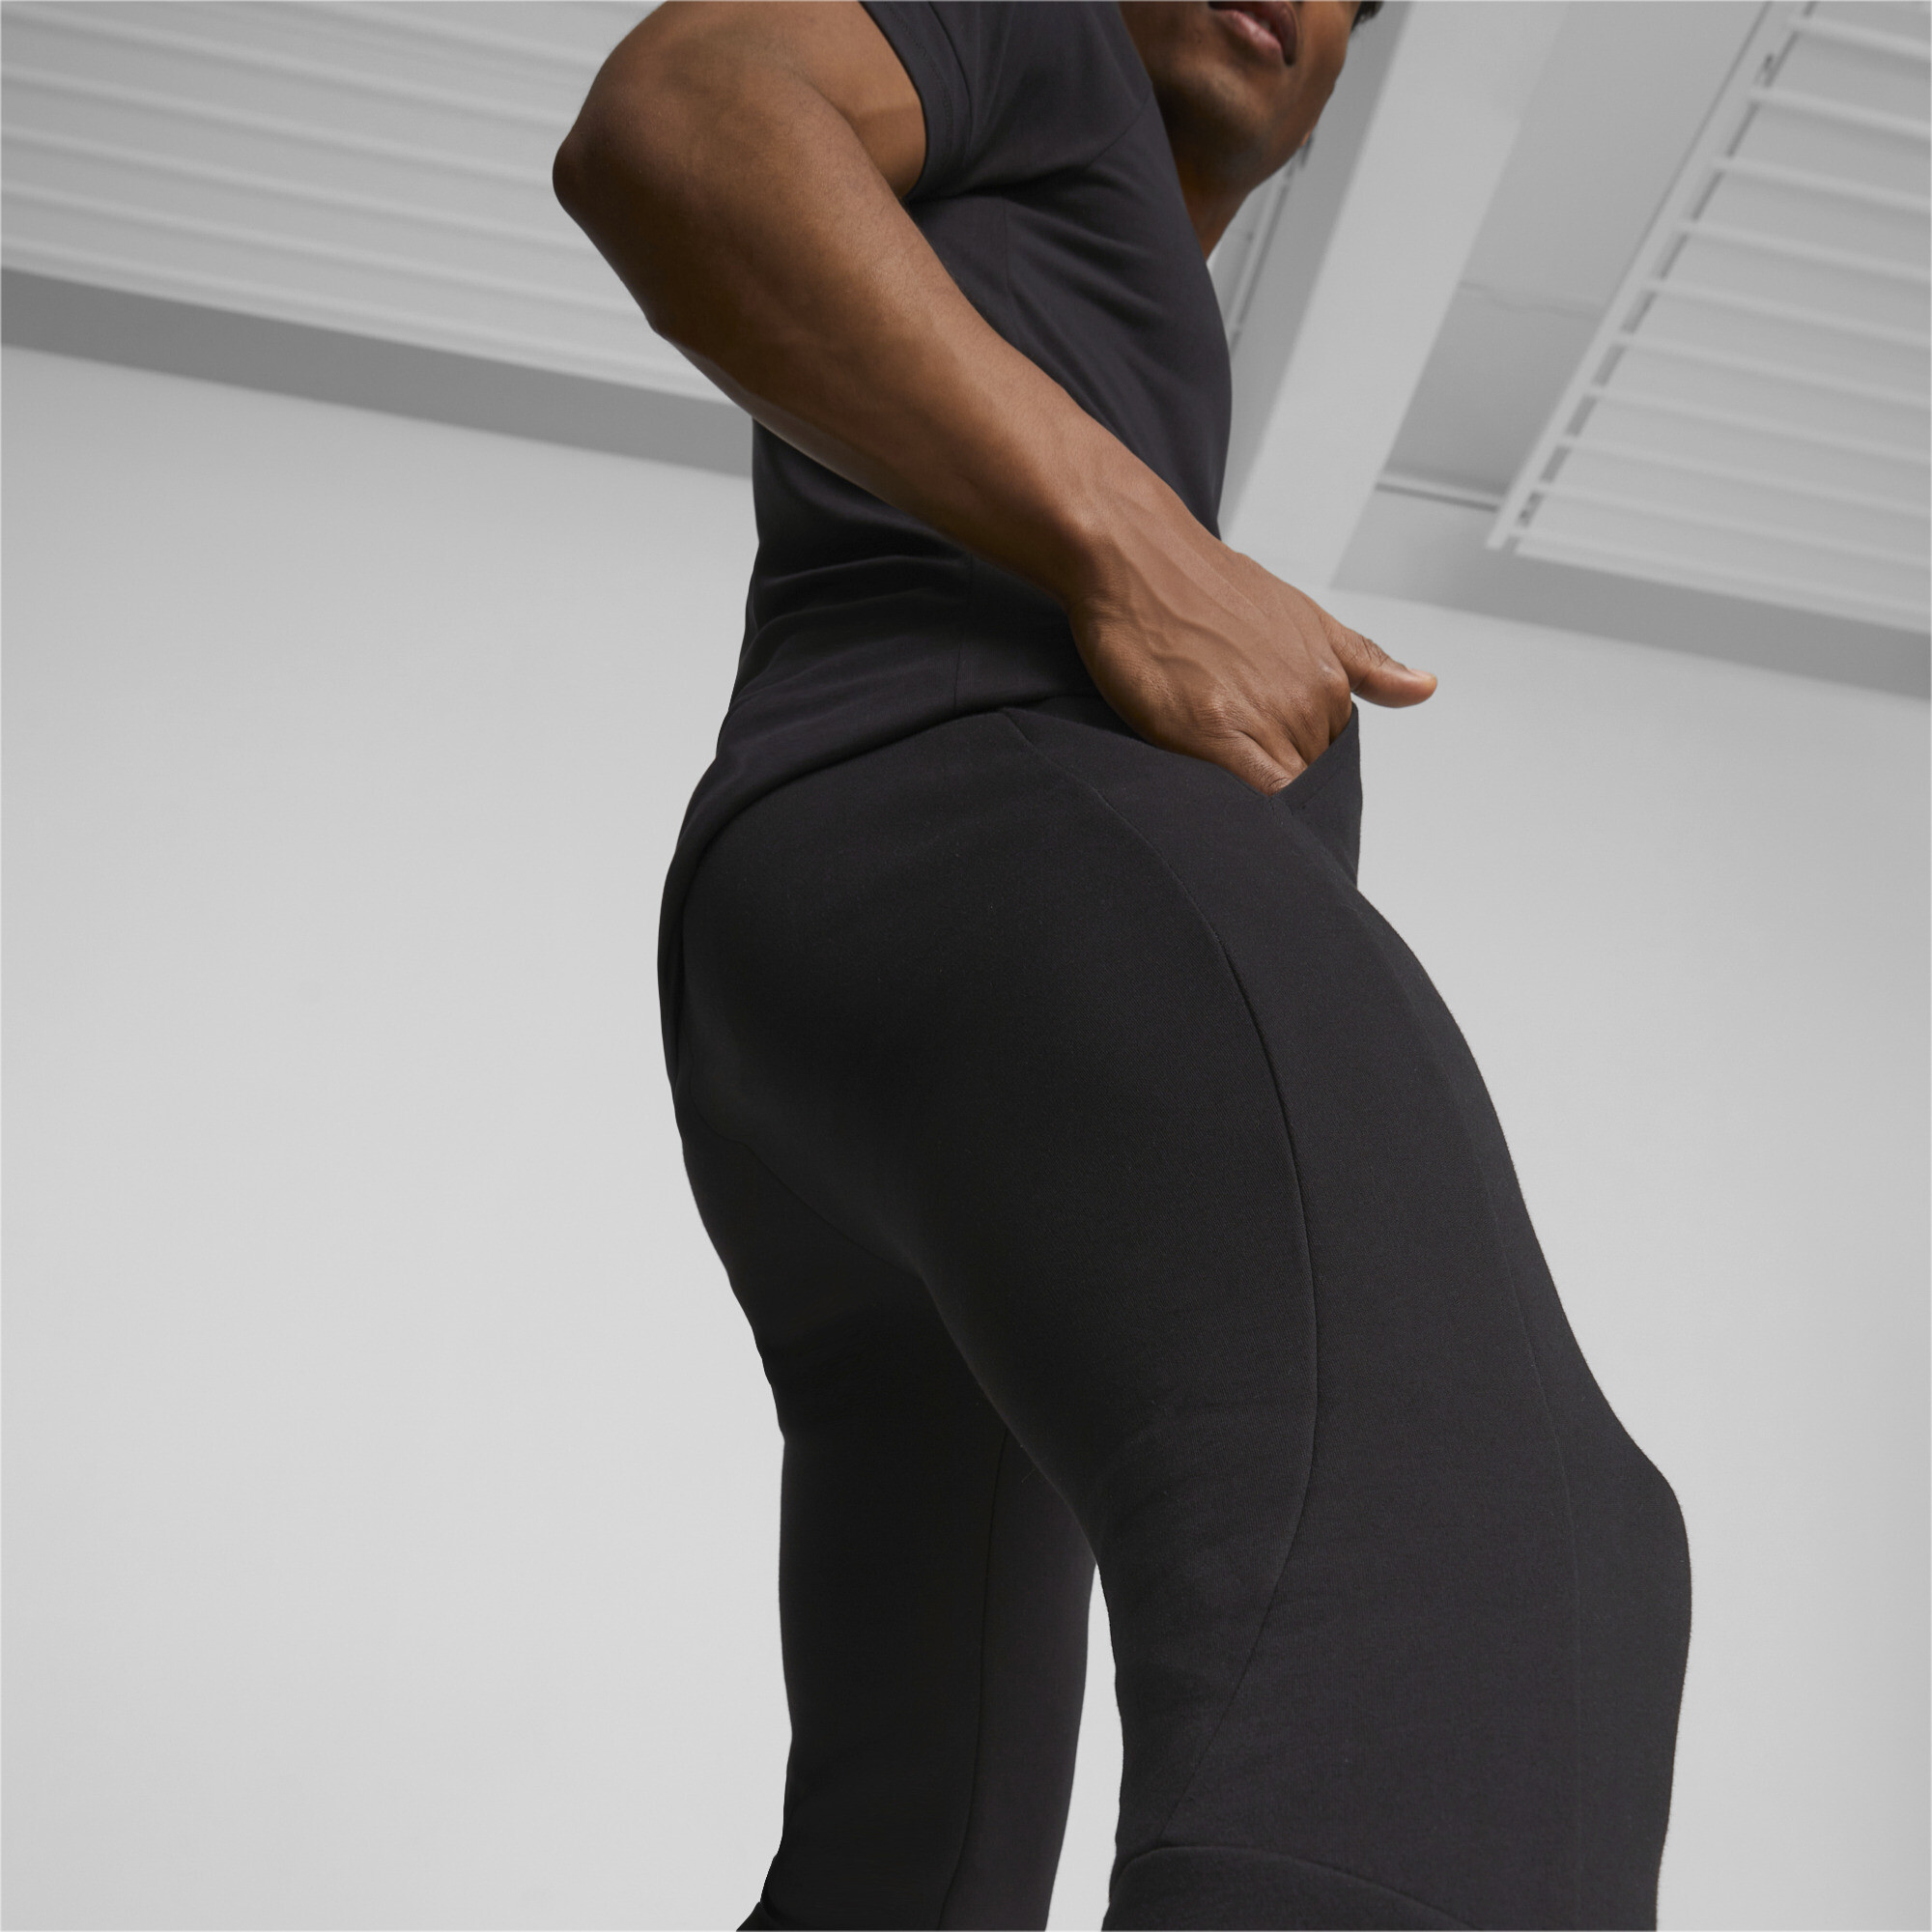 Men's PUMA Evostripe Sweatpants In Black, Size Large